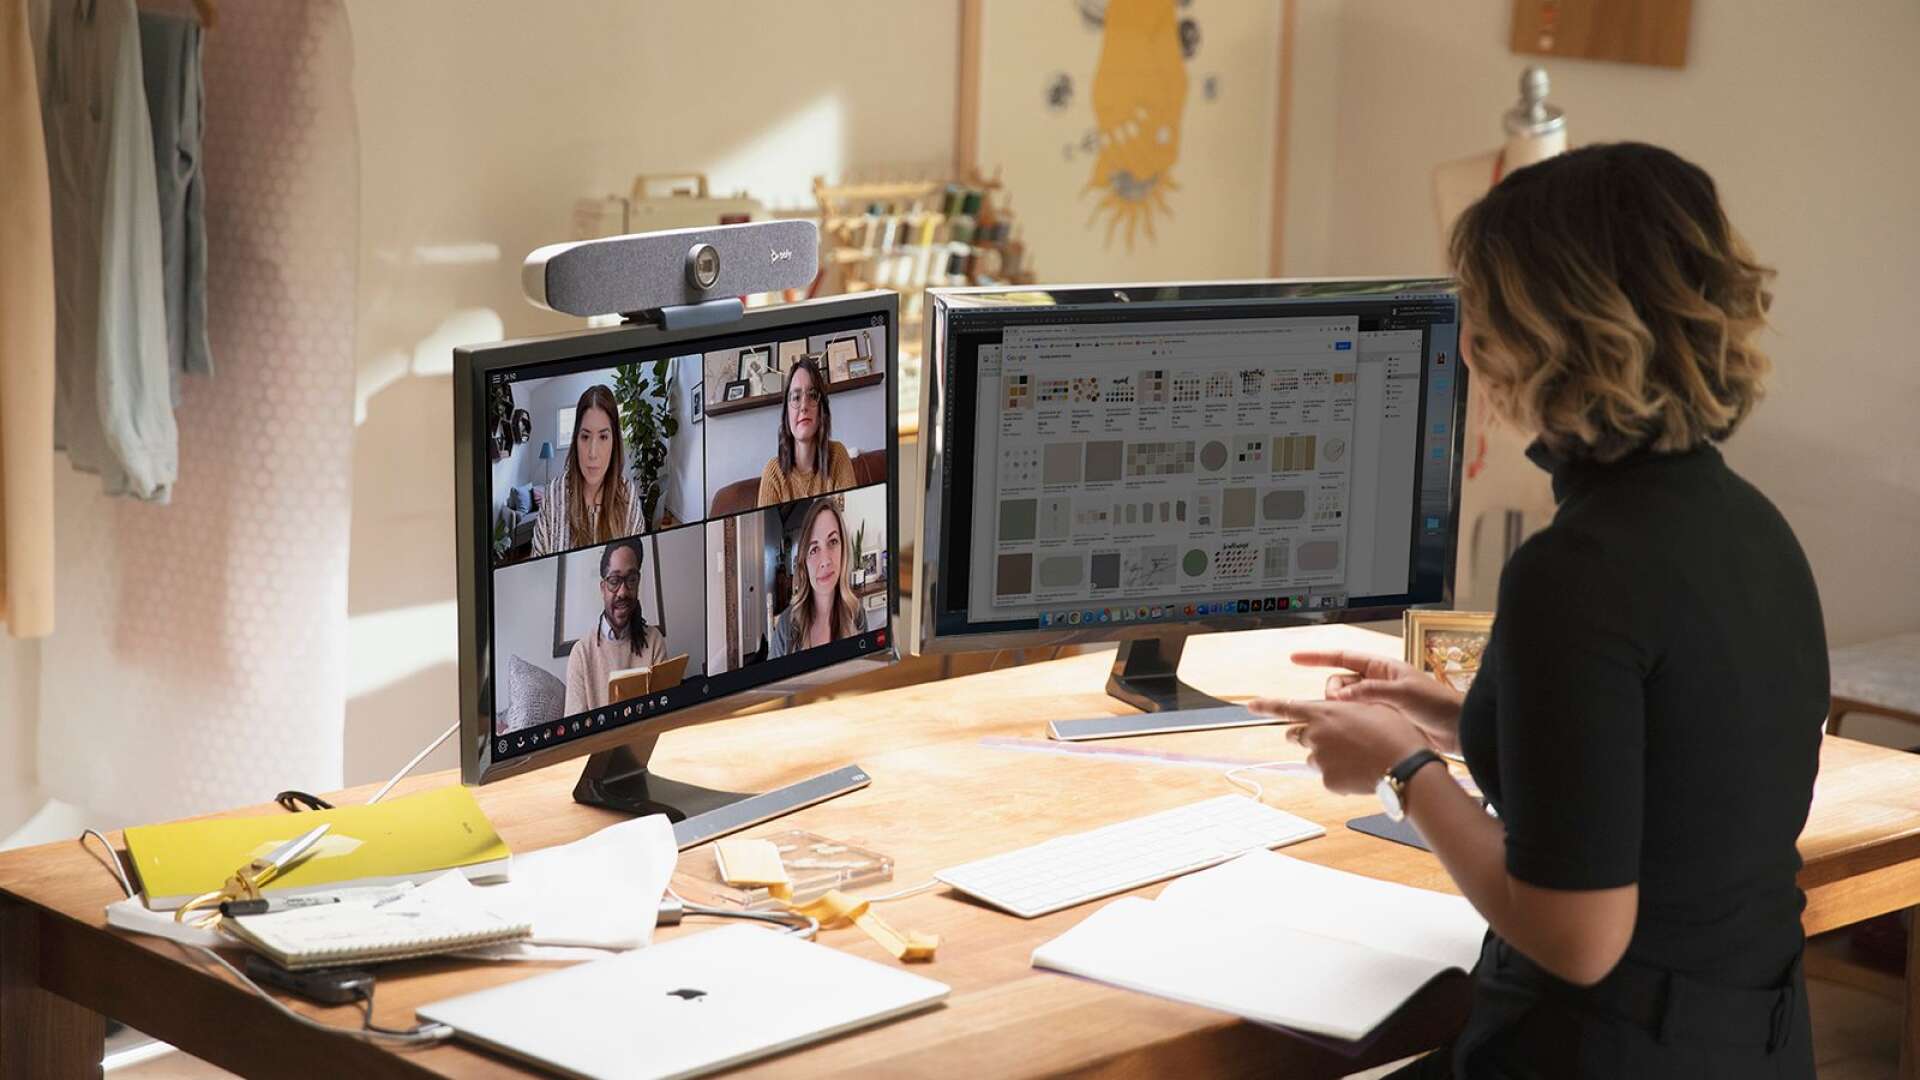 När medarbetarna flyttar sina arbetsplatser till köksbordet lämnas proffstekniken för videokonferenser kvar på kontoret trots att behovet av digitala möten ökar, skriver Paul Clark.